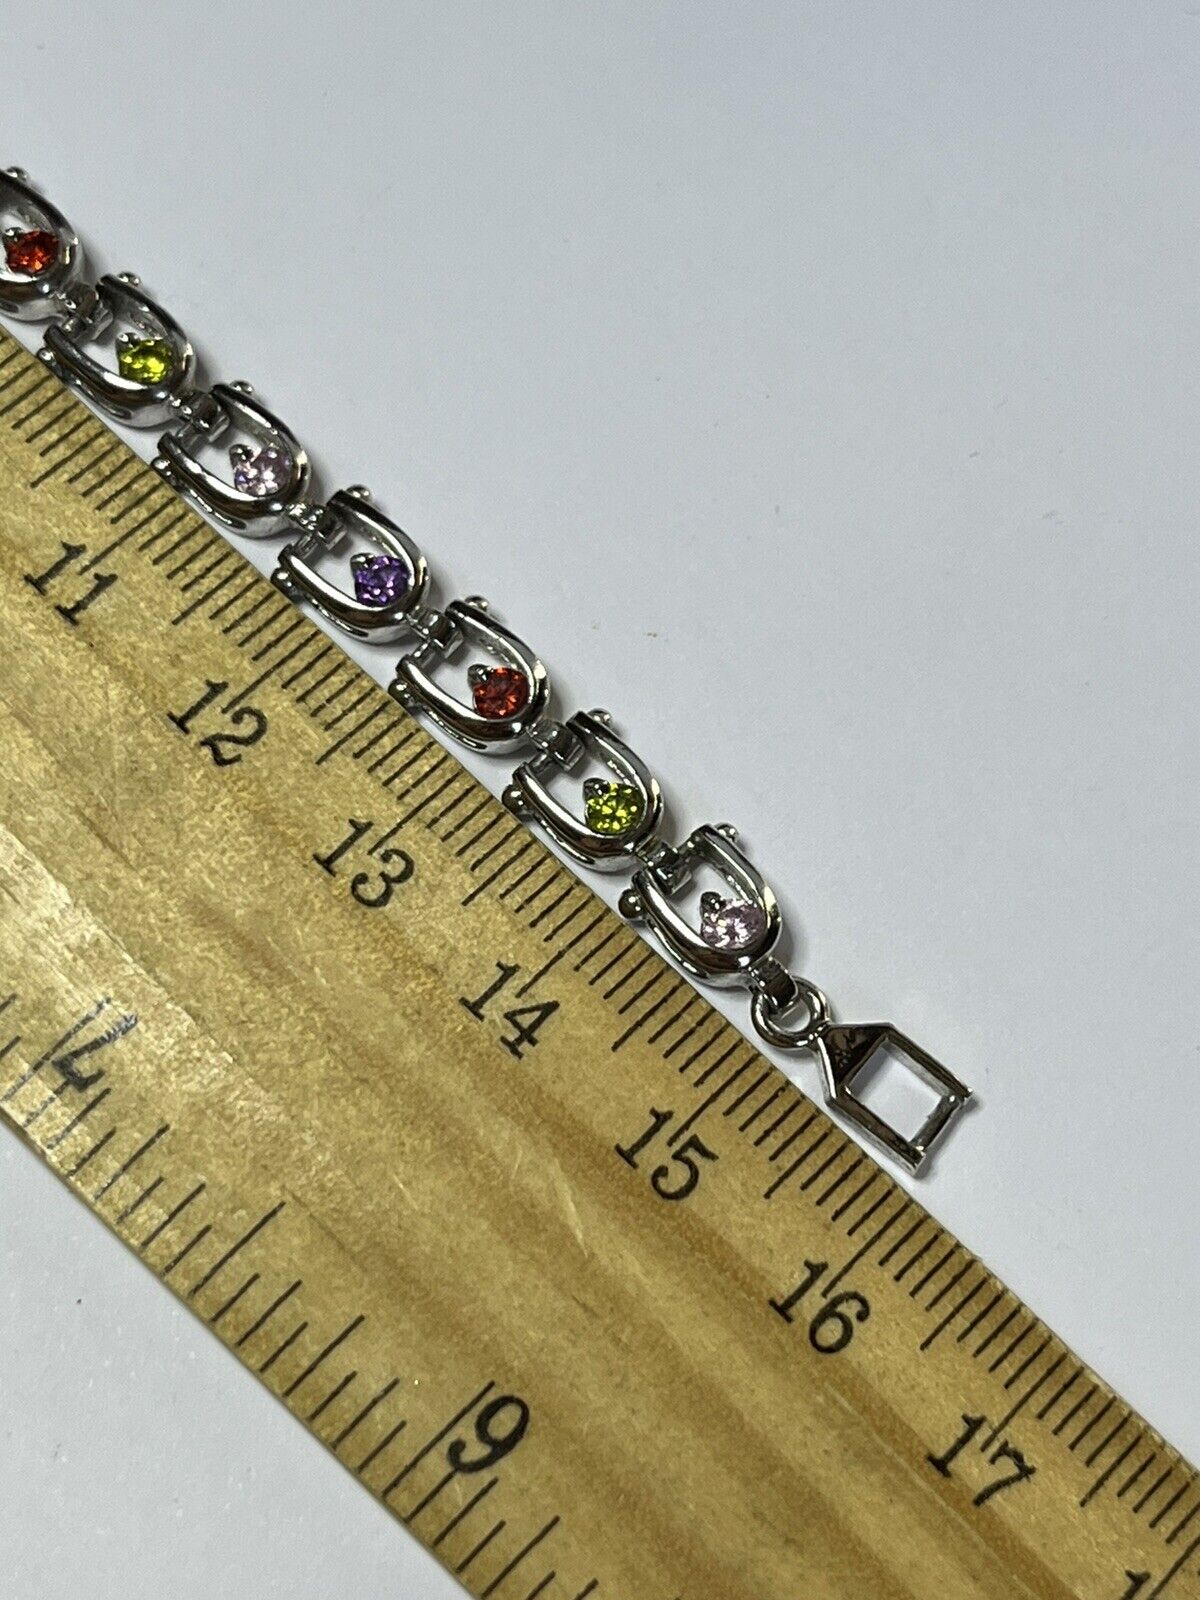 Vintage Silver Tone Multicoloured Diamanté Adjustable Tennis Bracelet